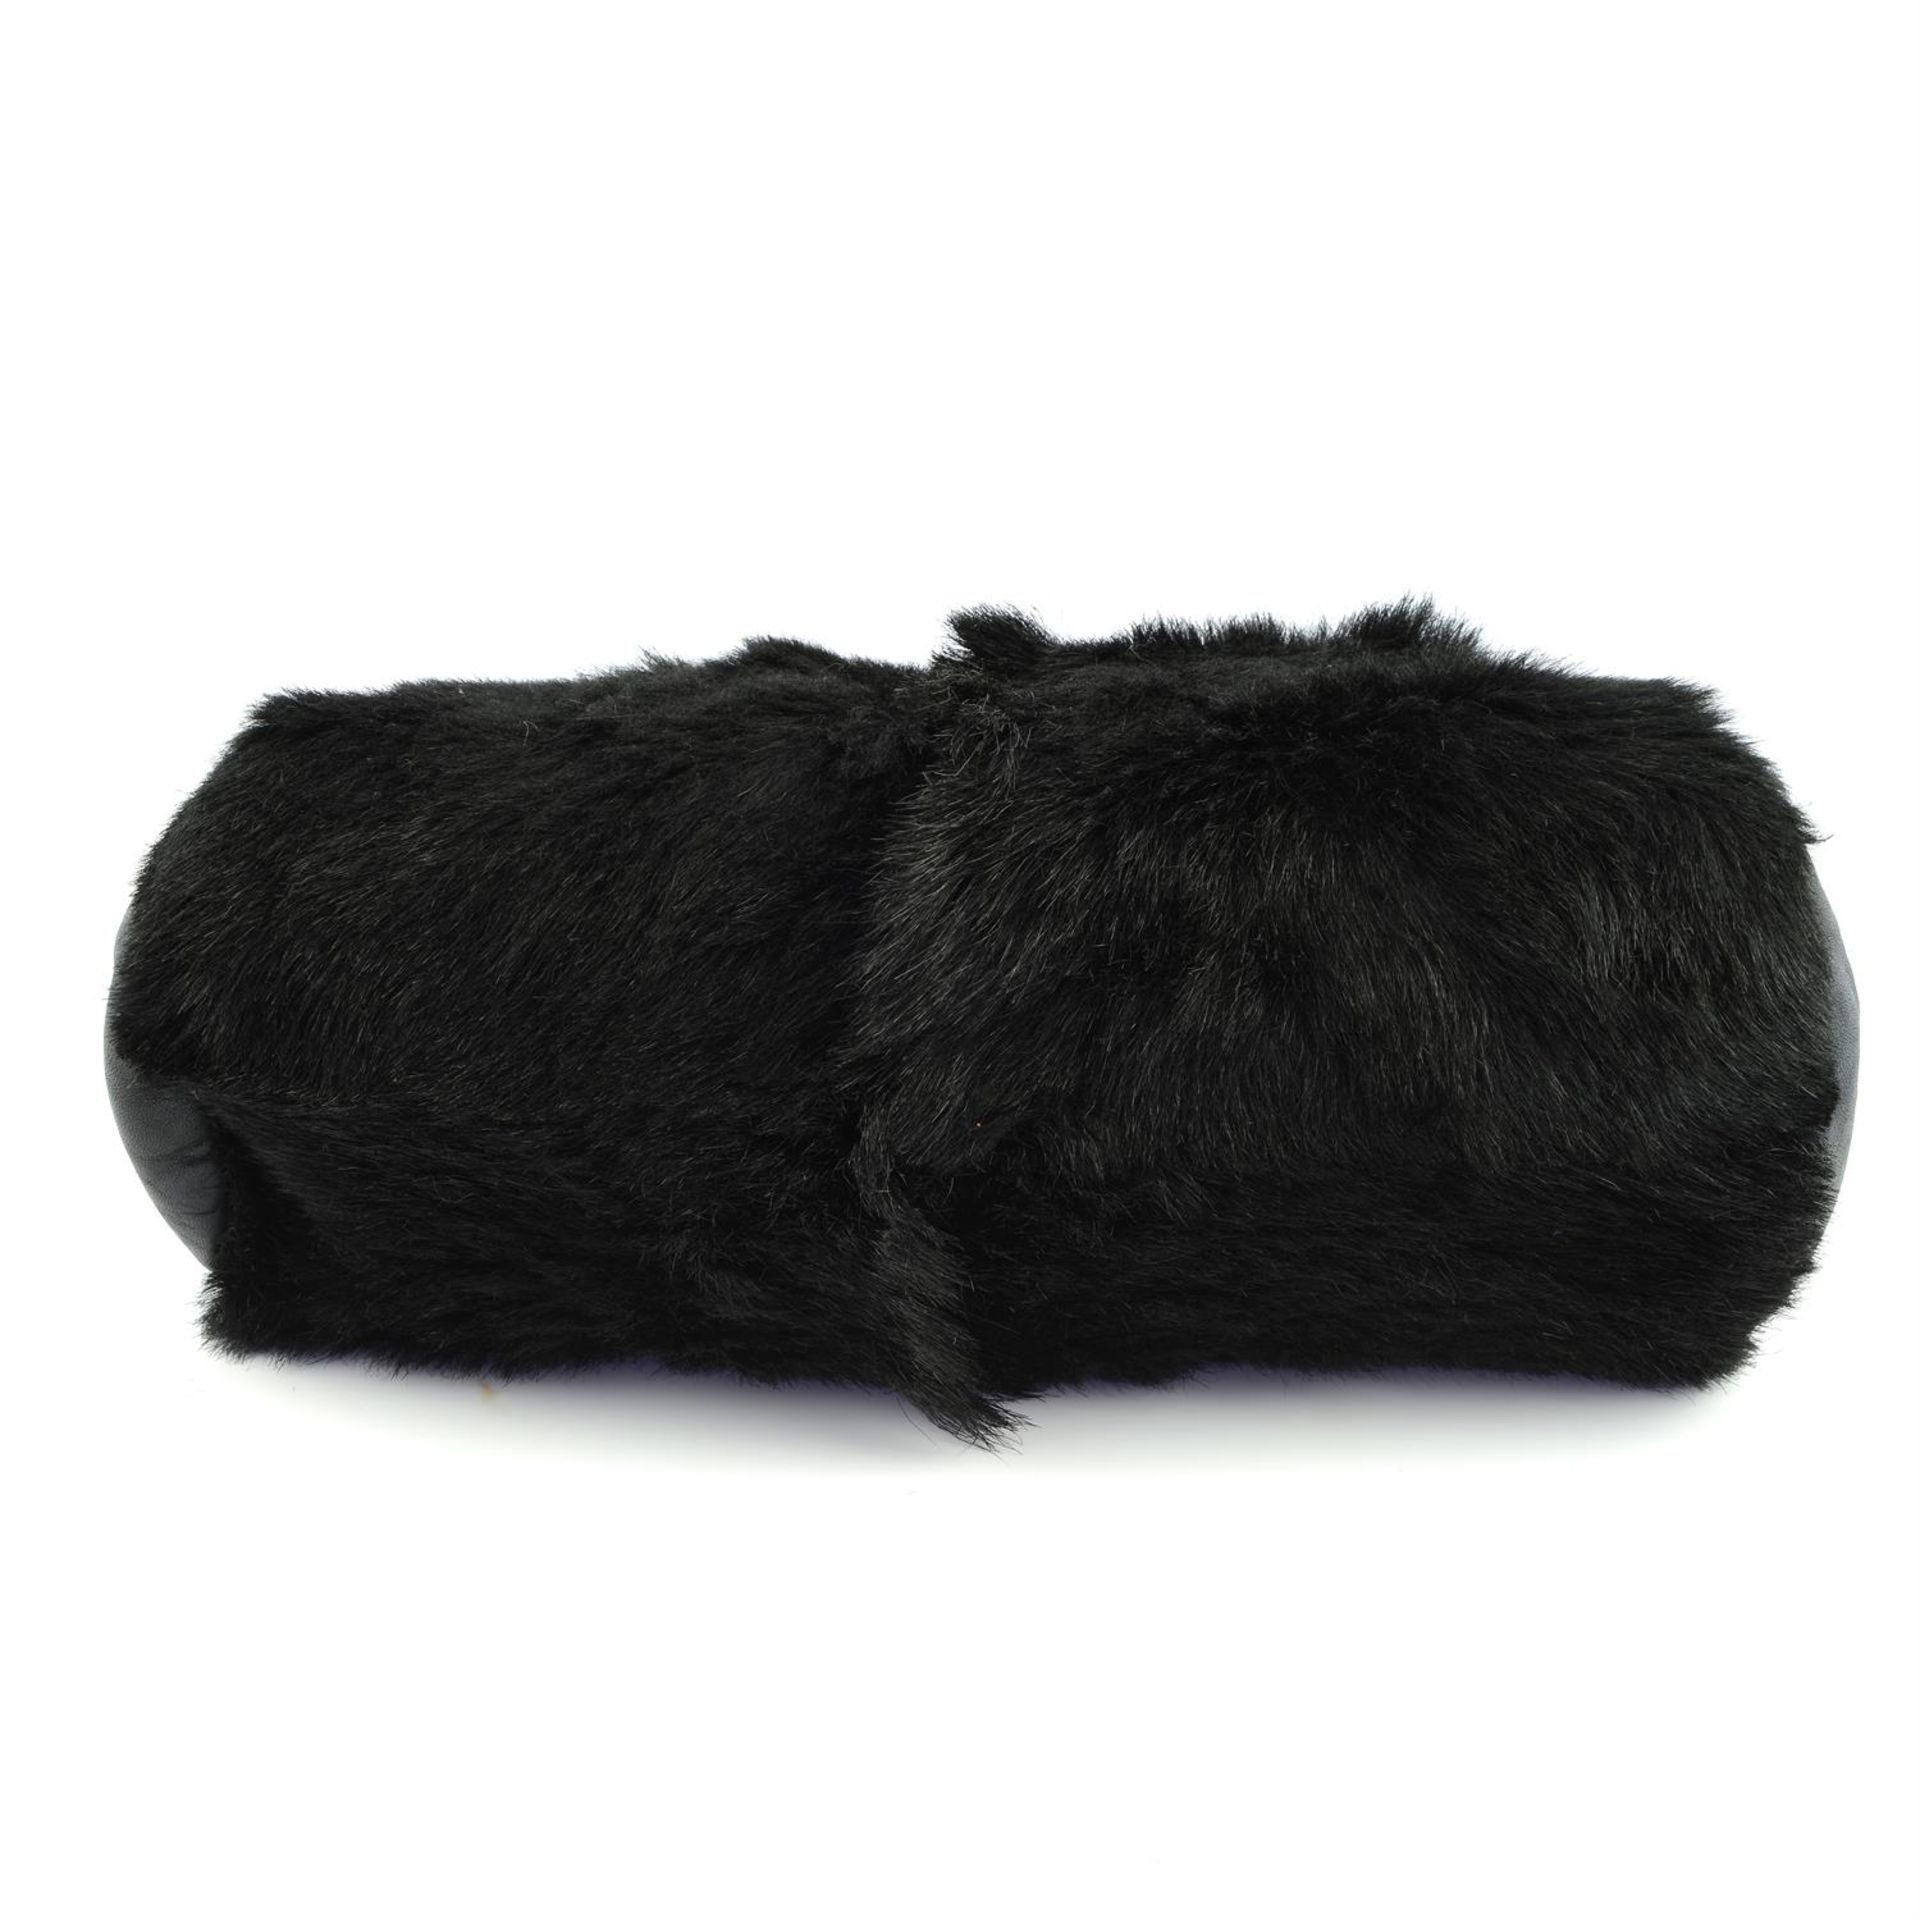 CHANEL - a black goat hair frame bag. - Image 3 of 5